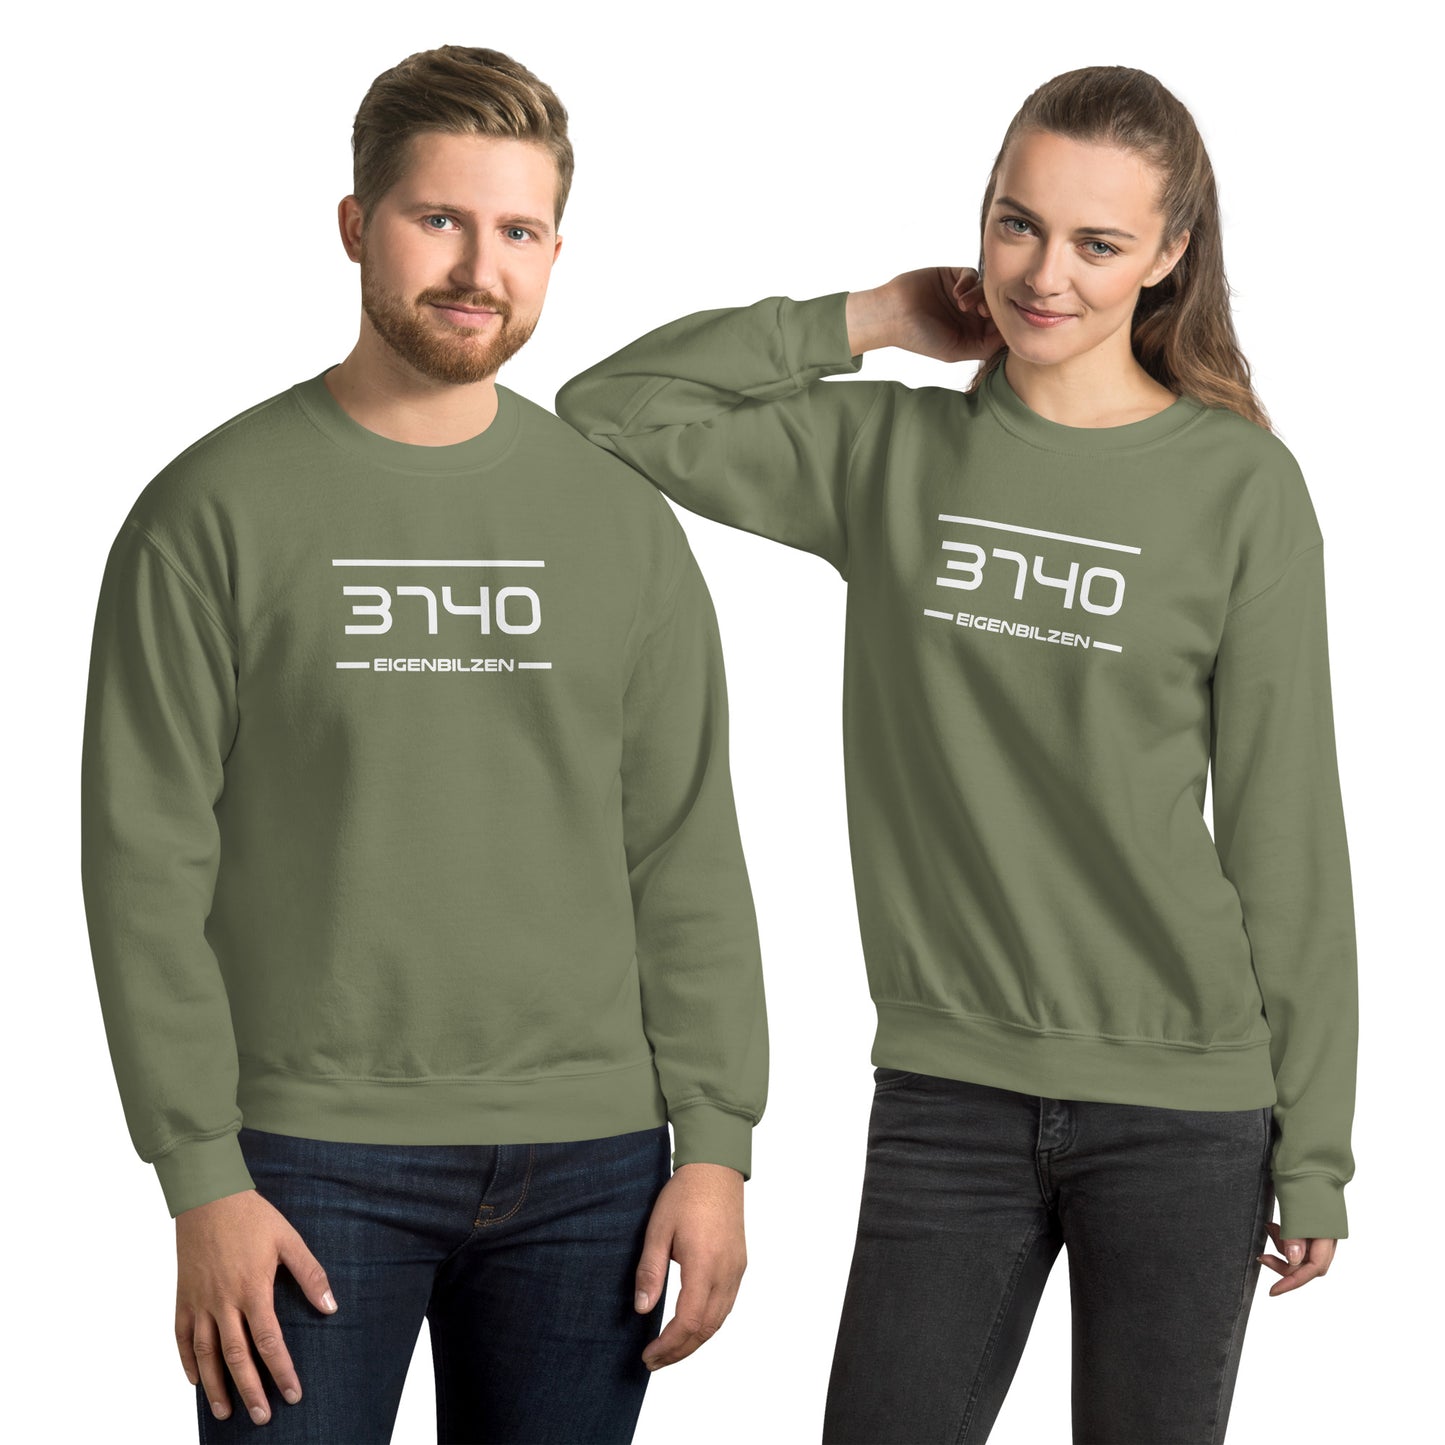 Sweater - 3740 - Eigenbilzen (M/V)